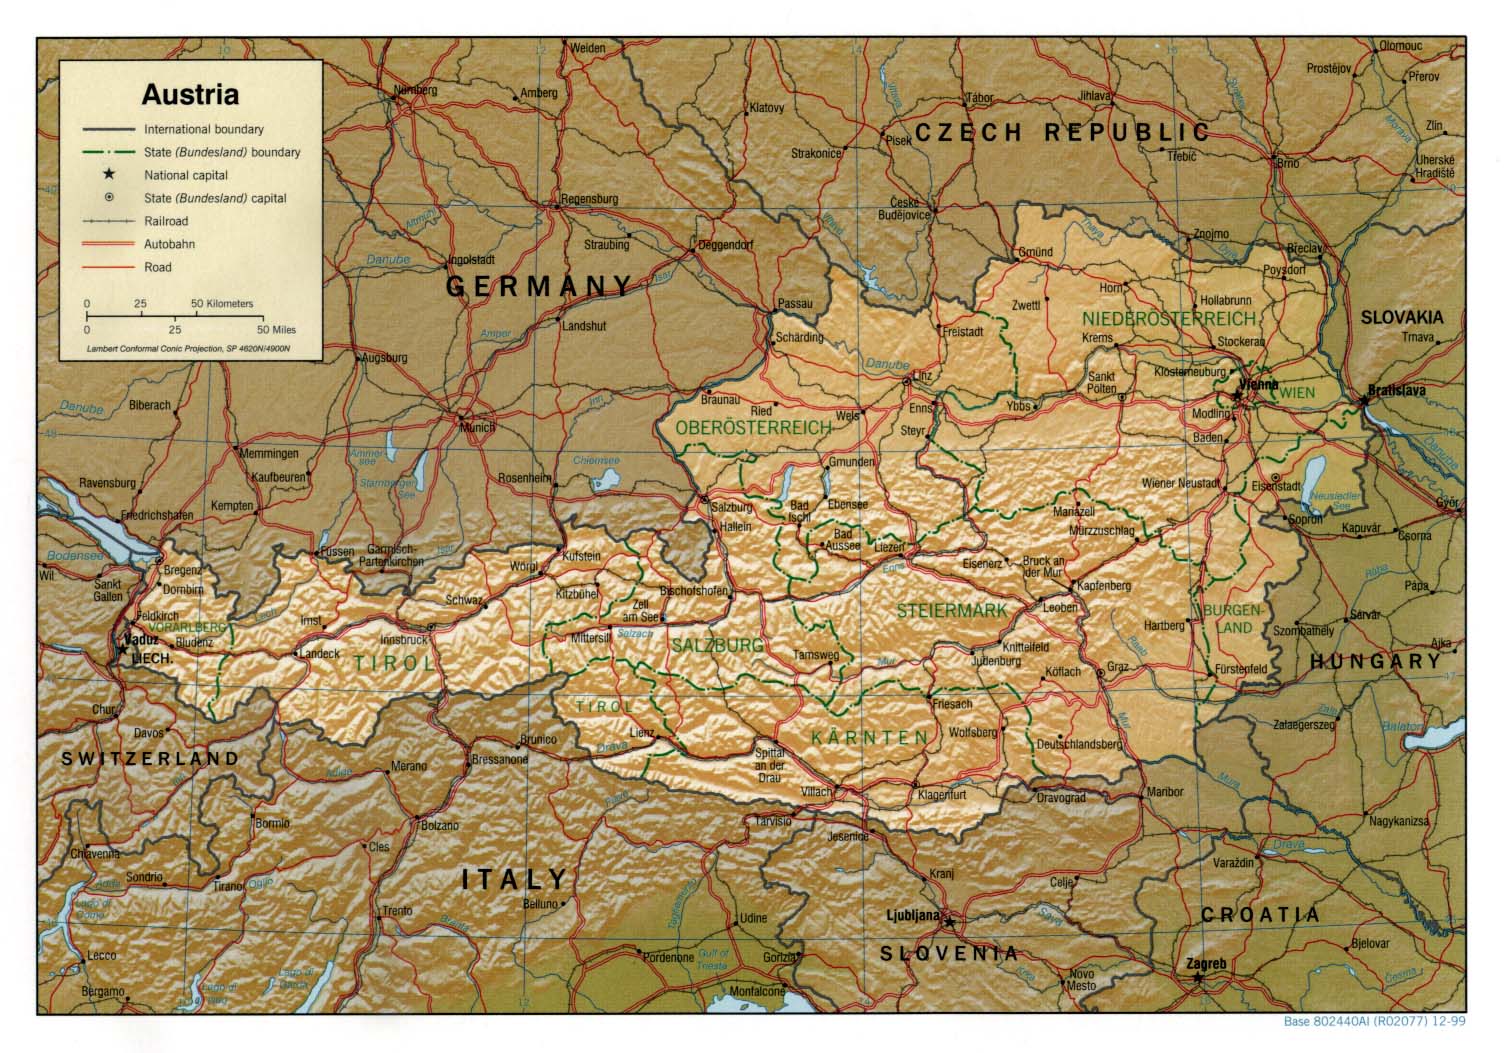 térkép ausztria település térképek Ausztria térkép lap   Megbízható válaszok profiktól térkép ausztria település térképek